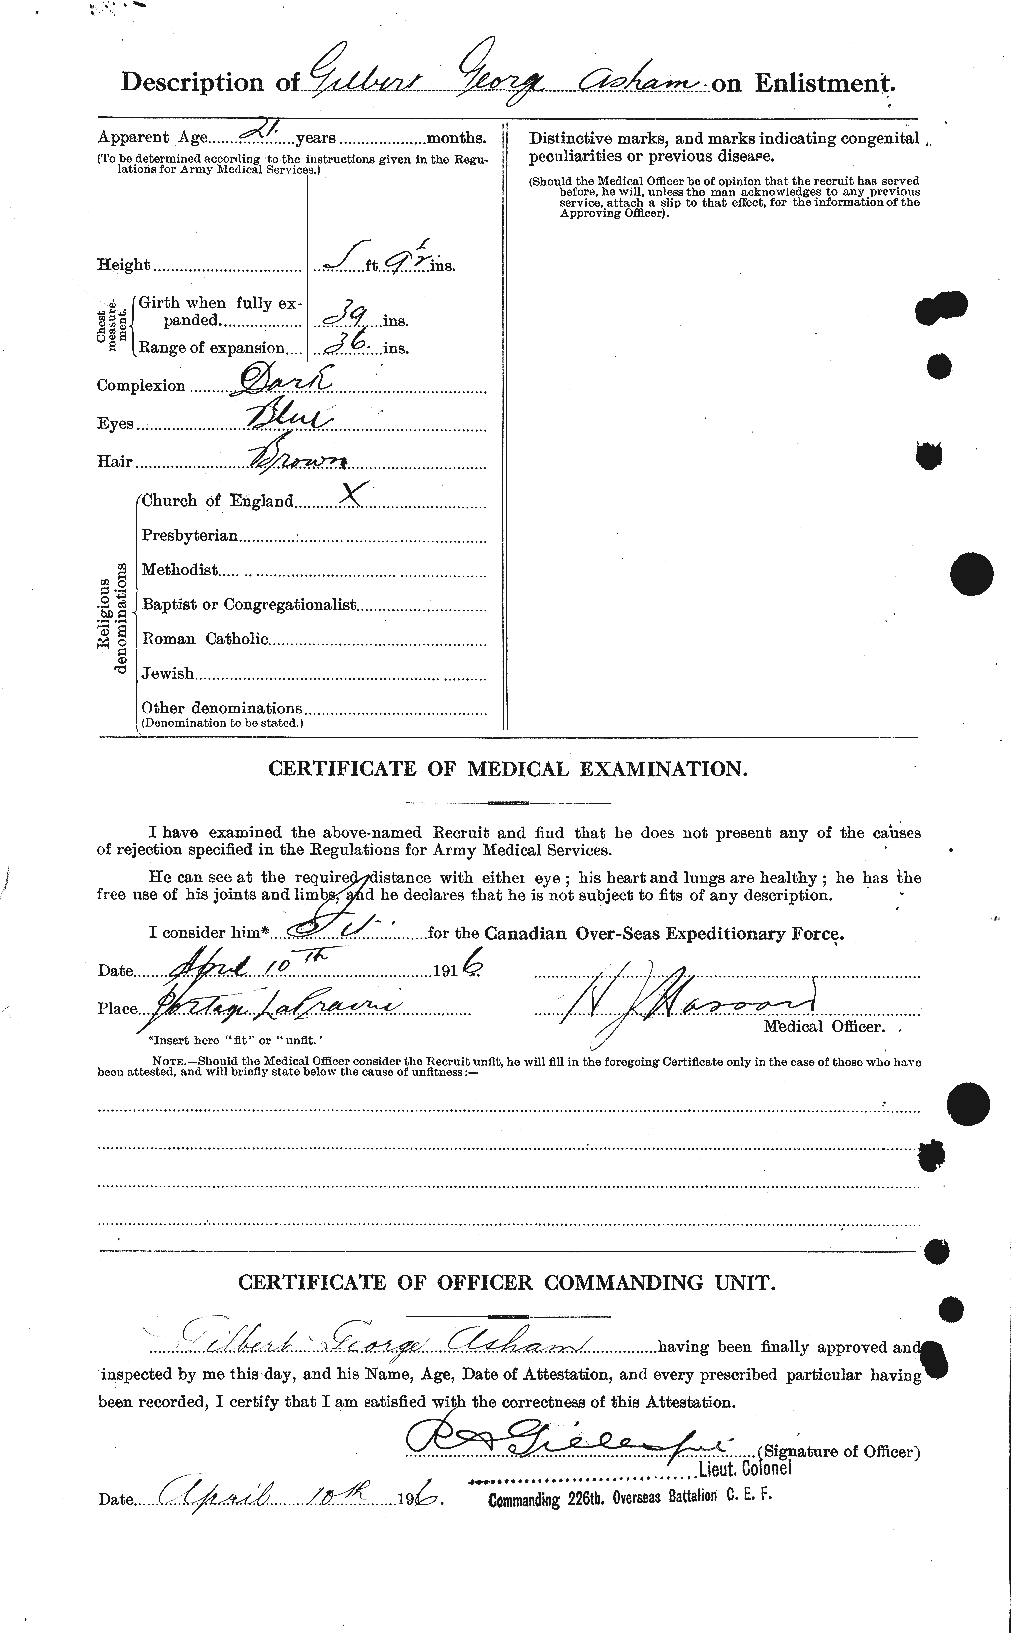 Dossiers du Personnel de la Première Guerre mondiale - CEC 214565b